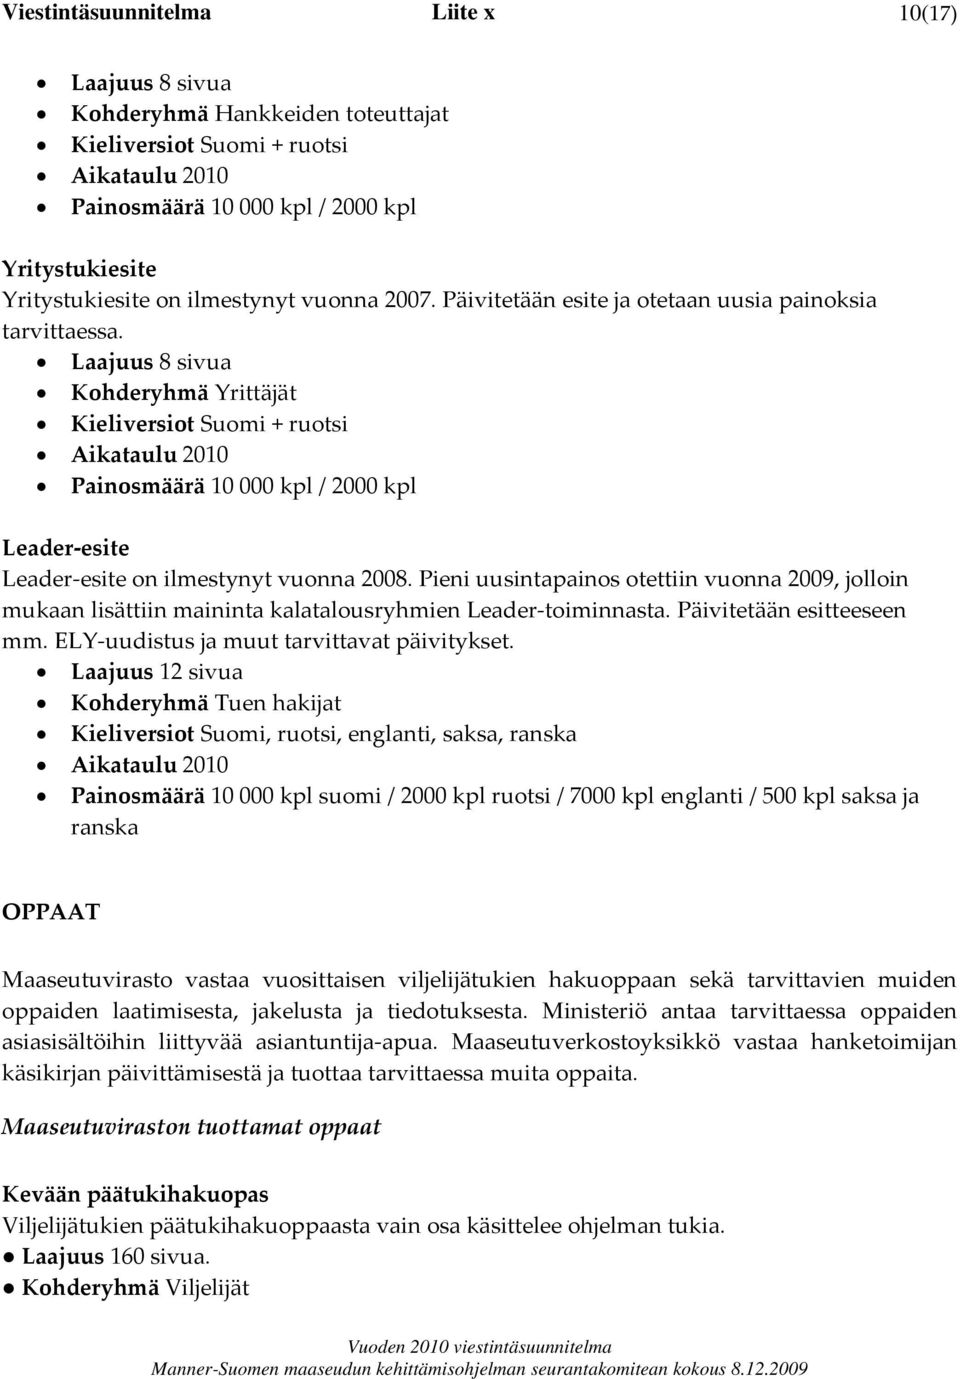 Laajuus 8 sivua Kohderyhmä Yrittäjät Kieliversiot Suomi + ruotsi Aikataulu 2010 Painosmäärä 10 000 kpl / 2000 kpl Leader esite Leader esite on ilmestynyt vuonna 2008.